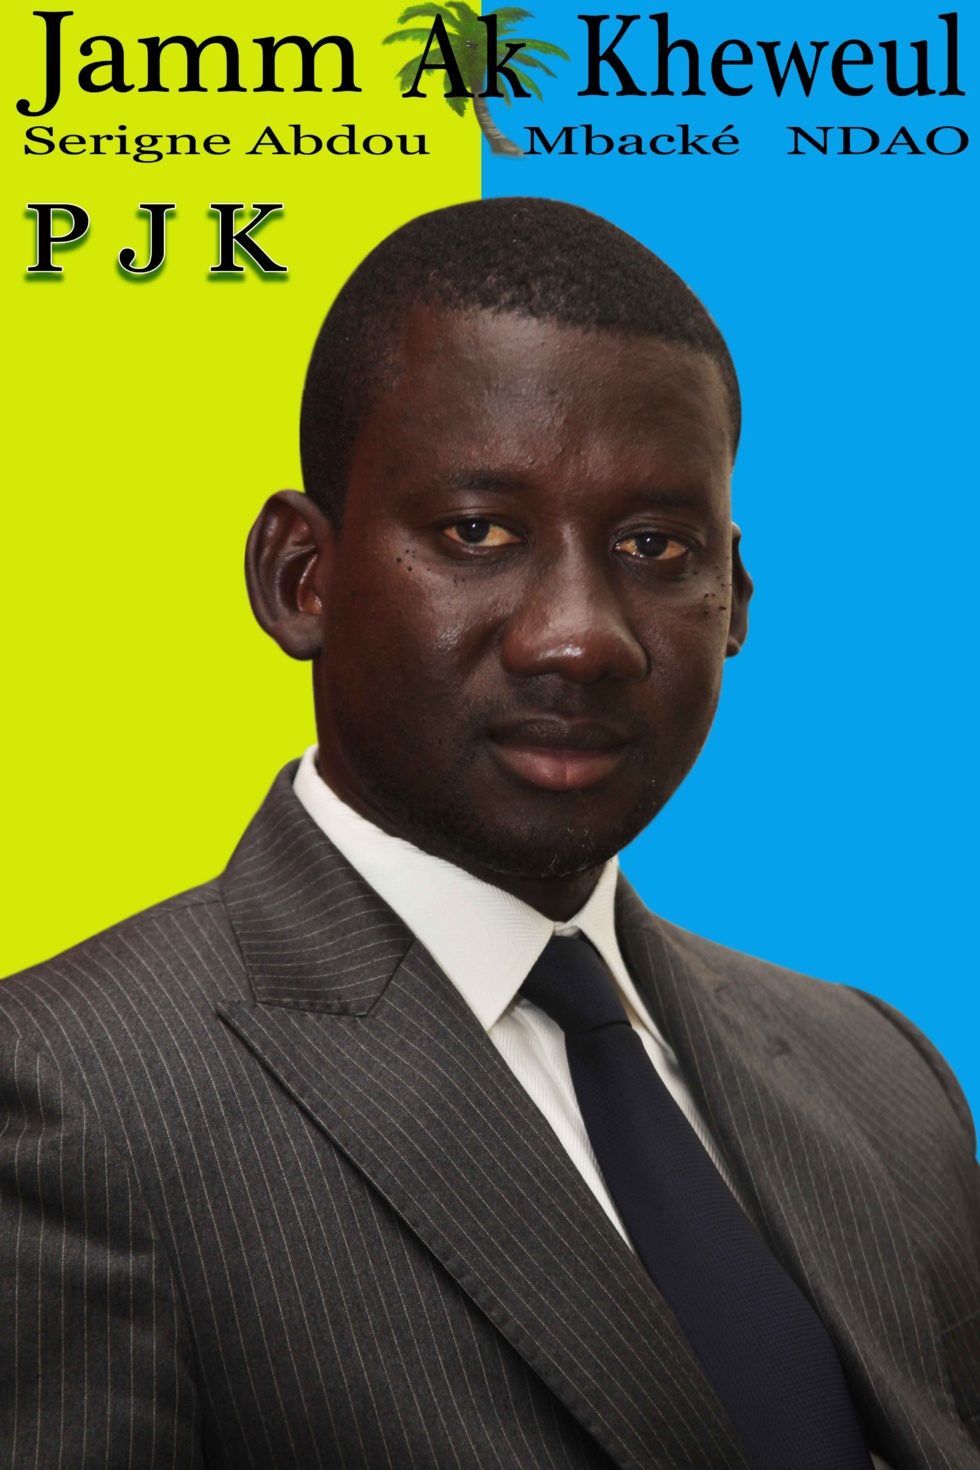 L'affiche de campagne de Abdou Mbacké Ndao, candidat à la mairie de Mbacké